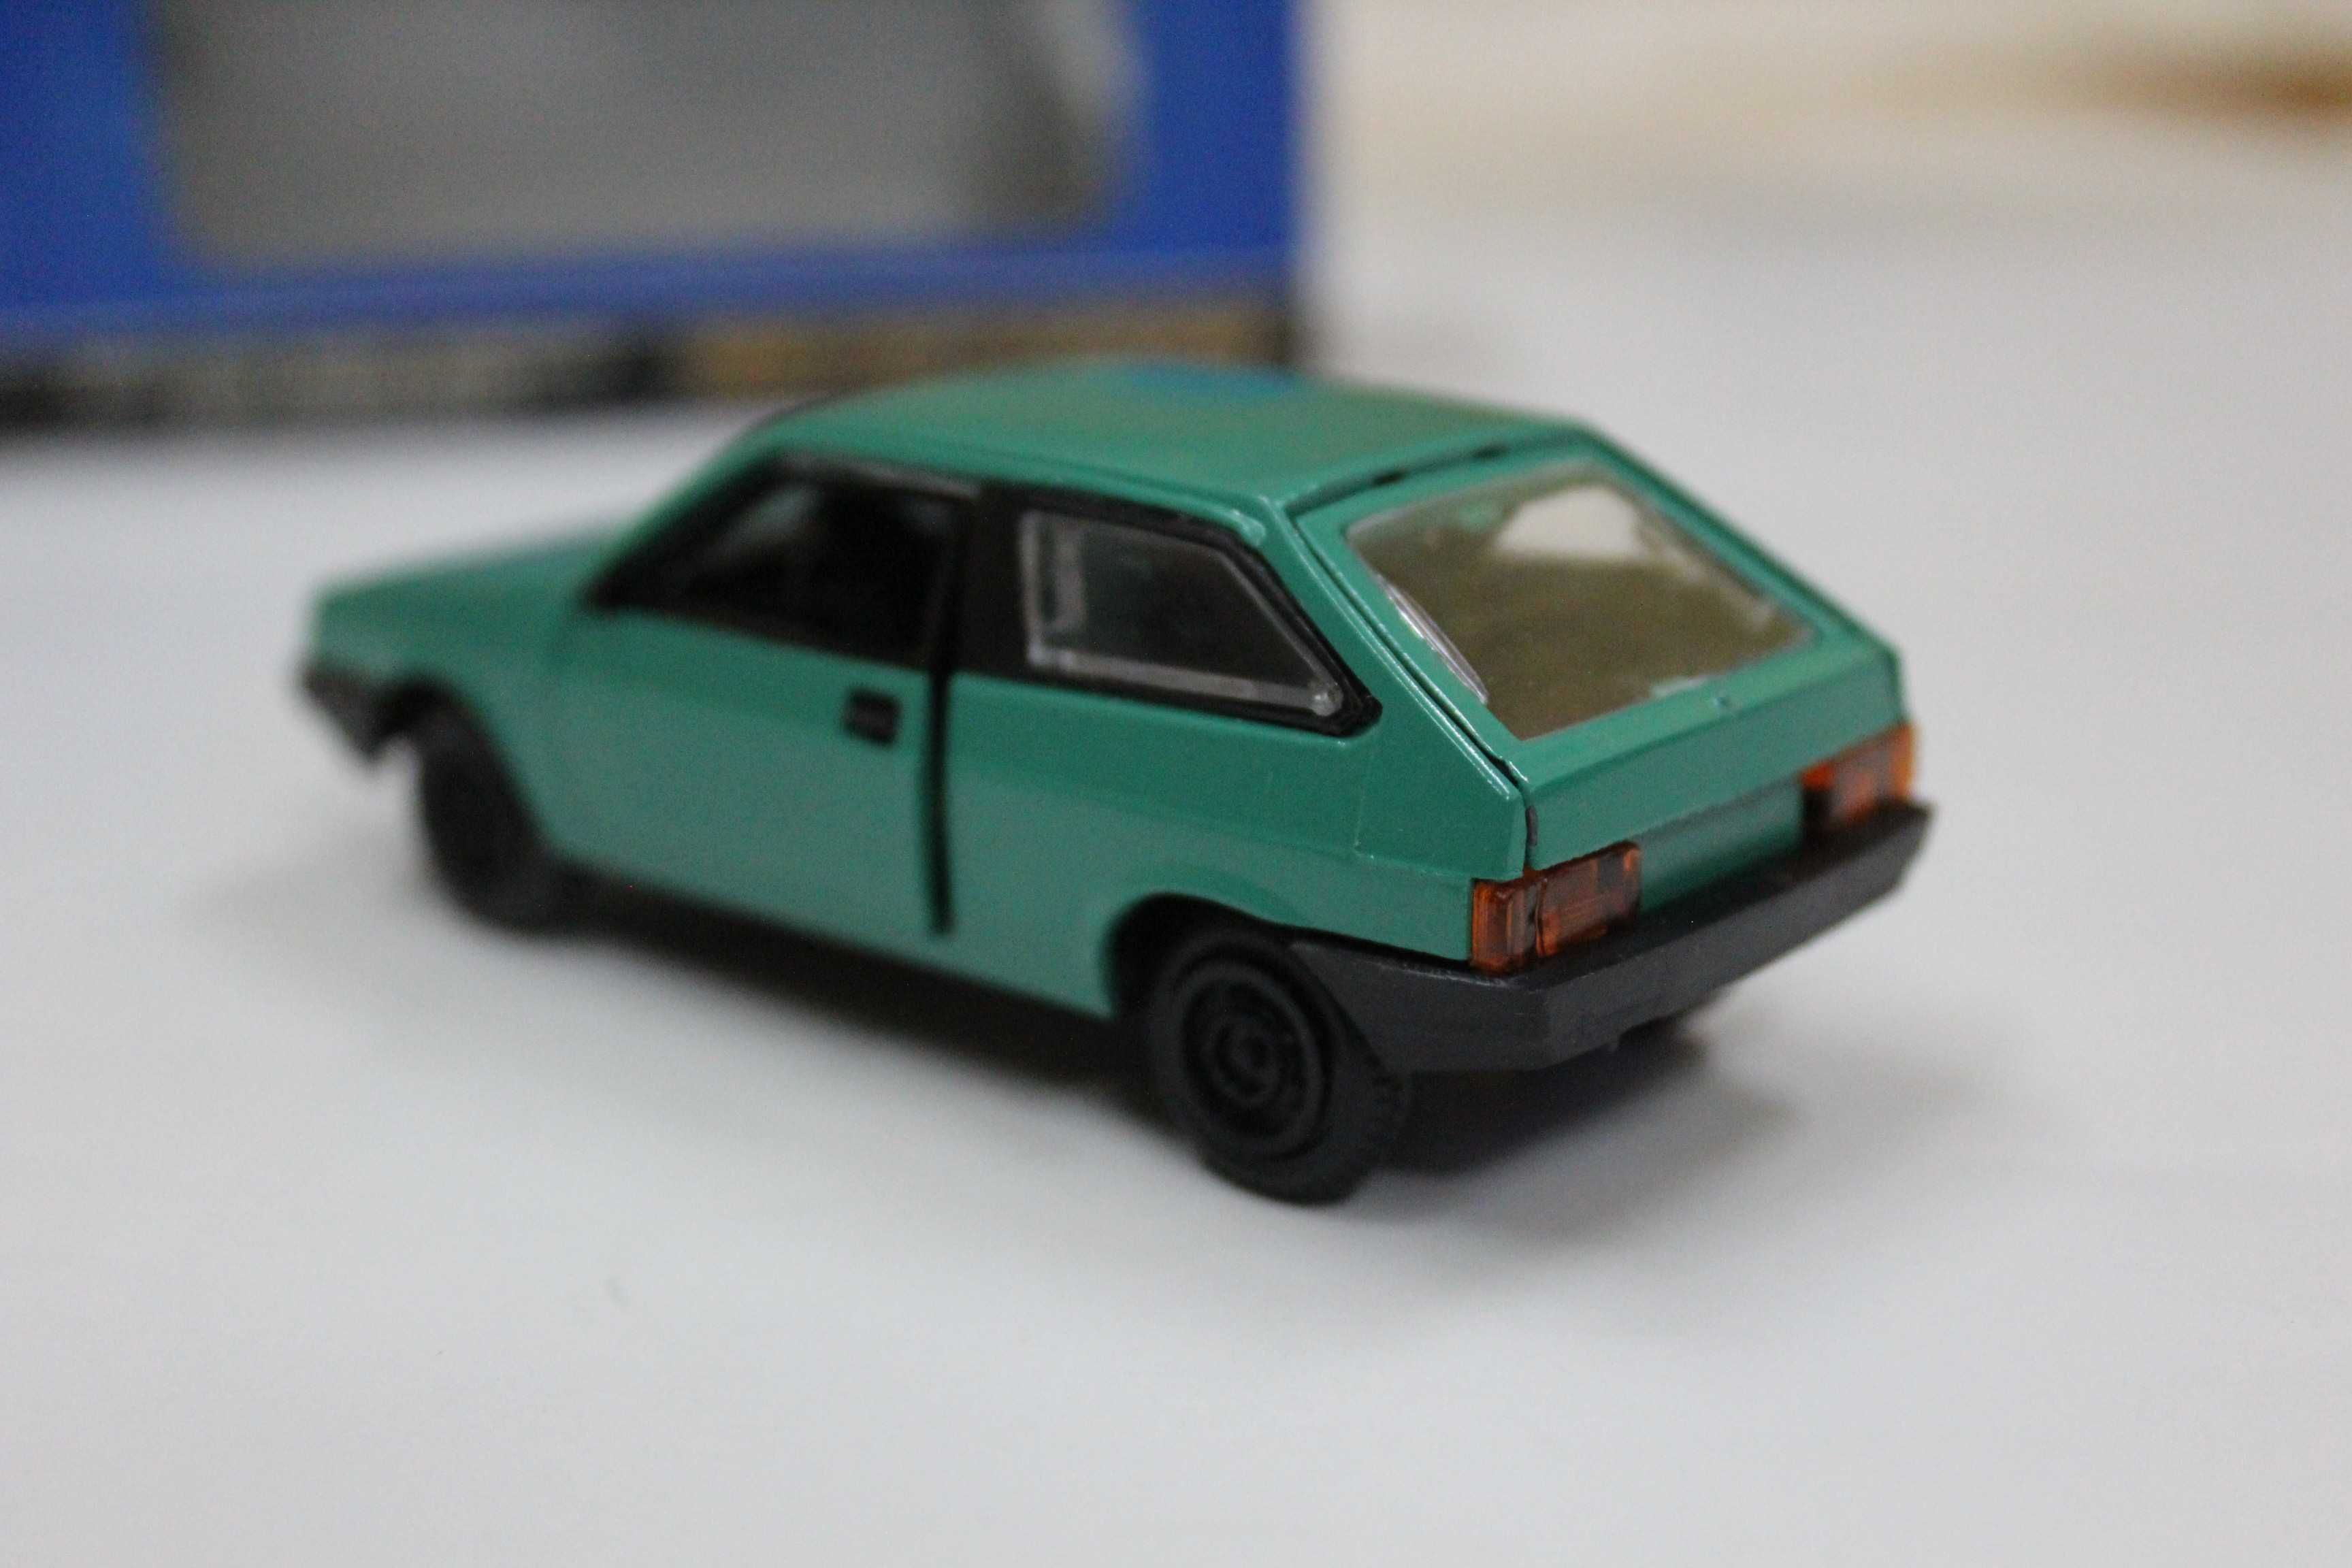 Модель игрушка машина автомобиль ВАЗ 2108 СССР / январь 1991 (новая)